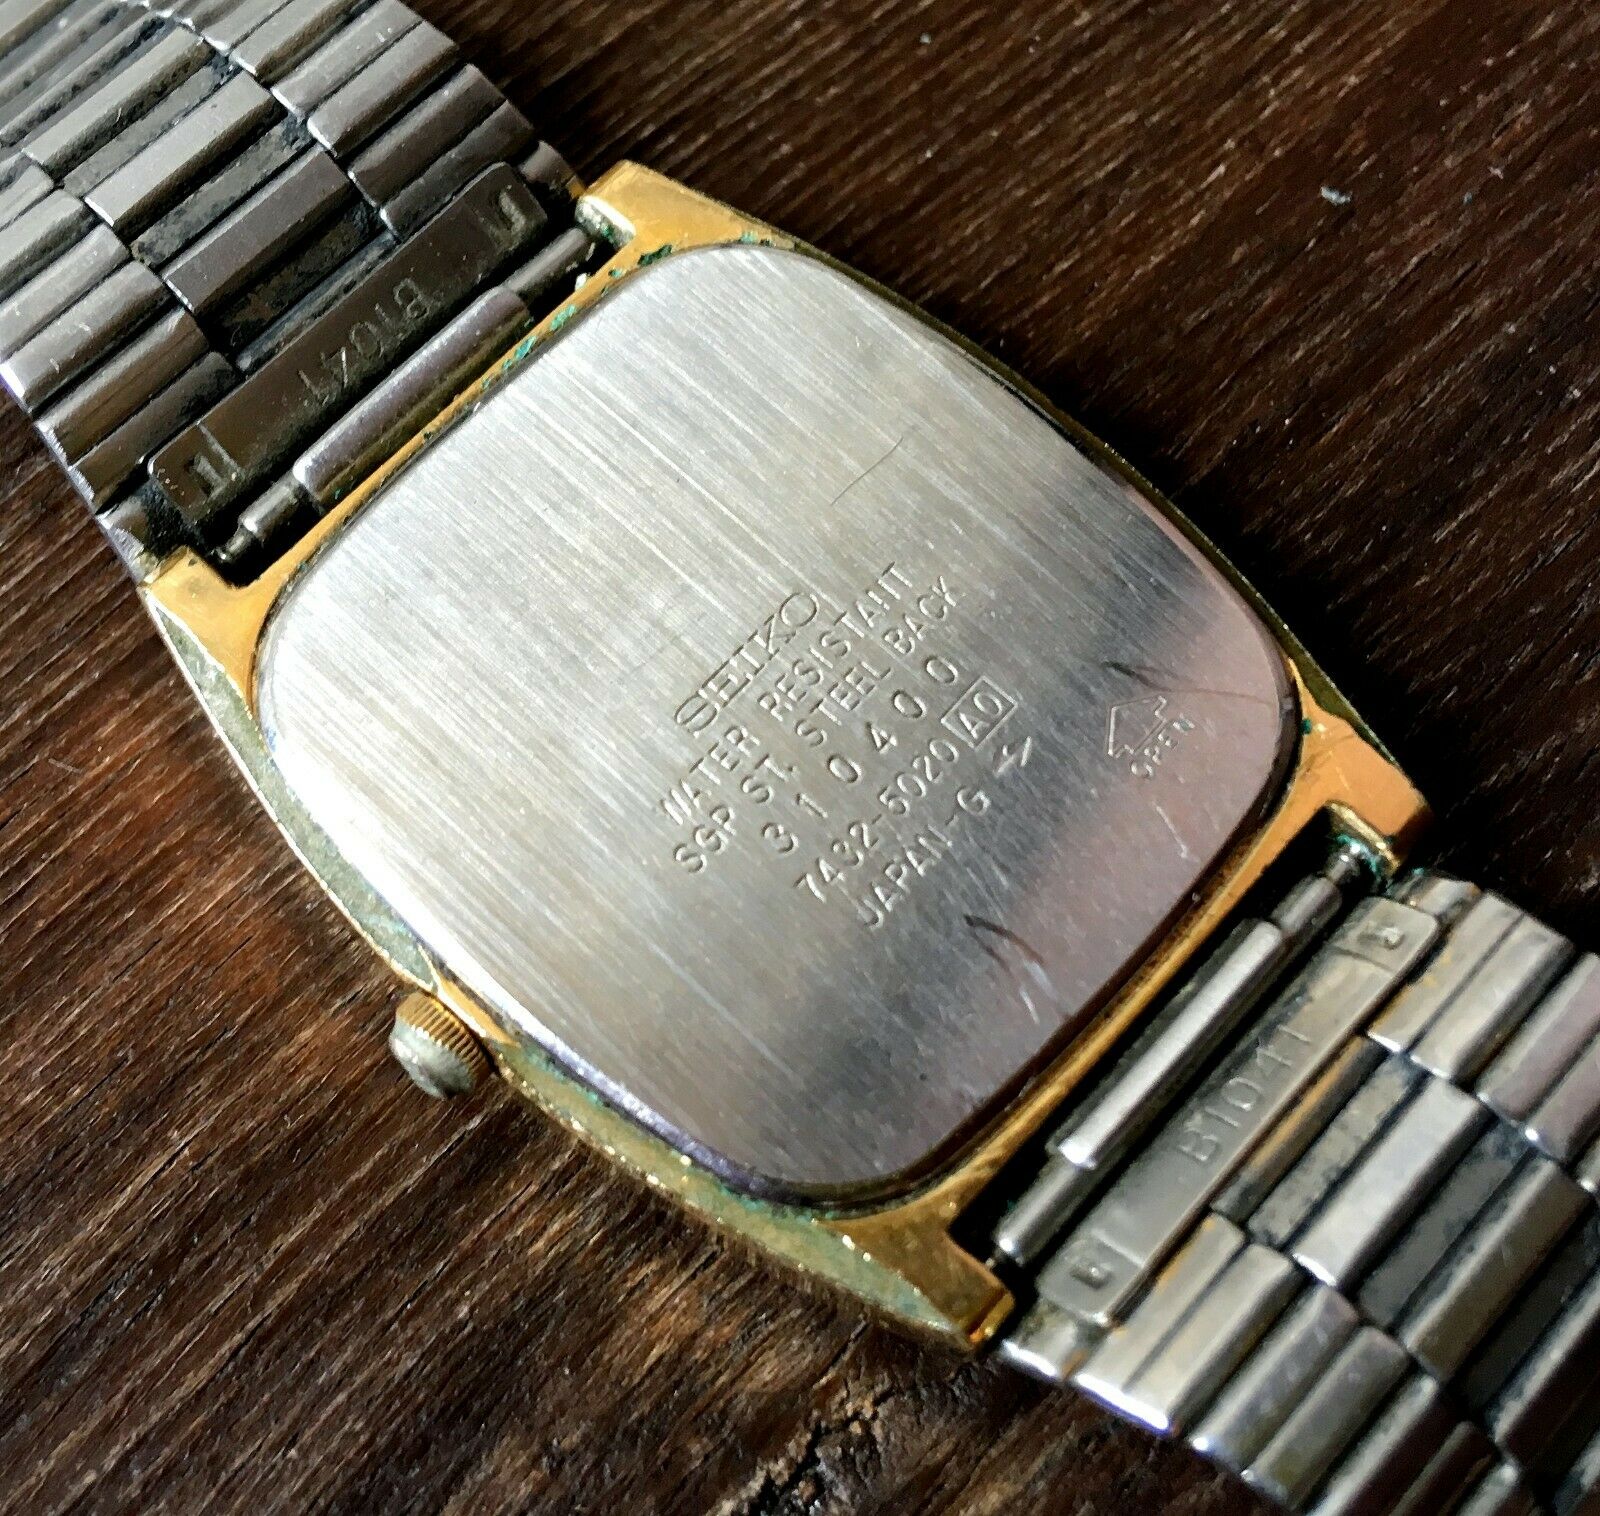 ✩ Vintage SEIKO 7432-5020  JAPAN 1980s old quartz wrist watch |  WatchCharts